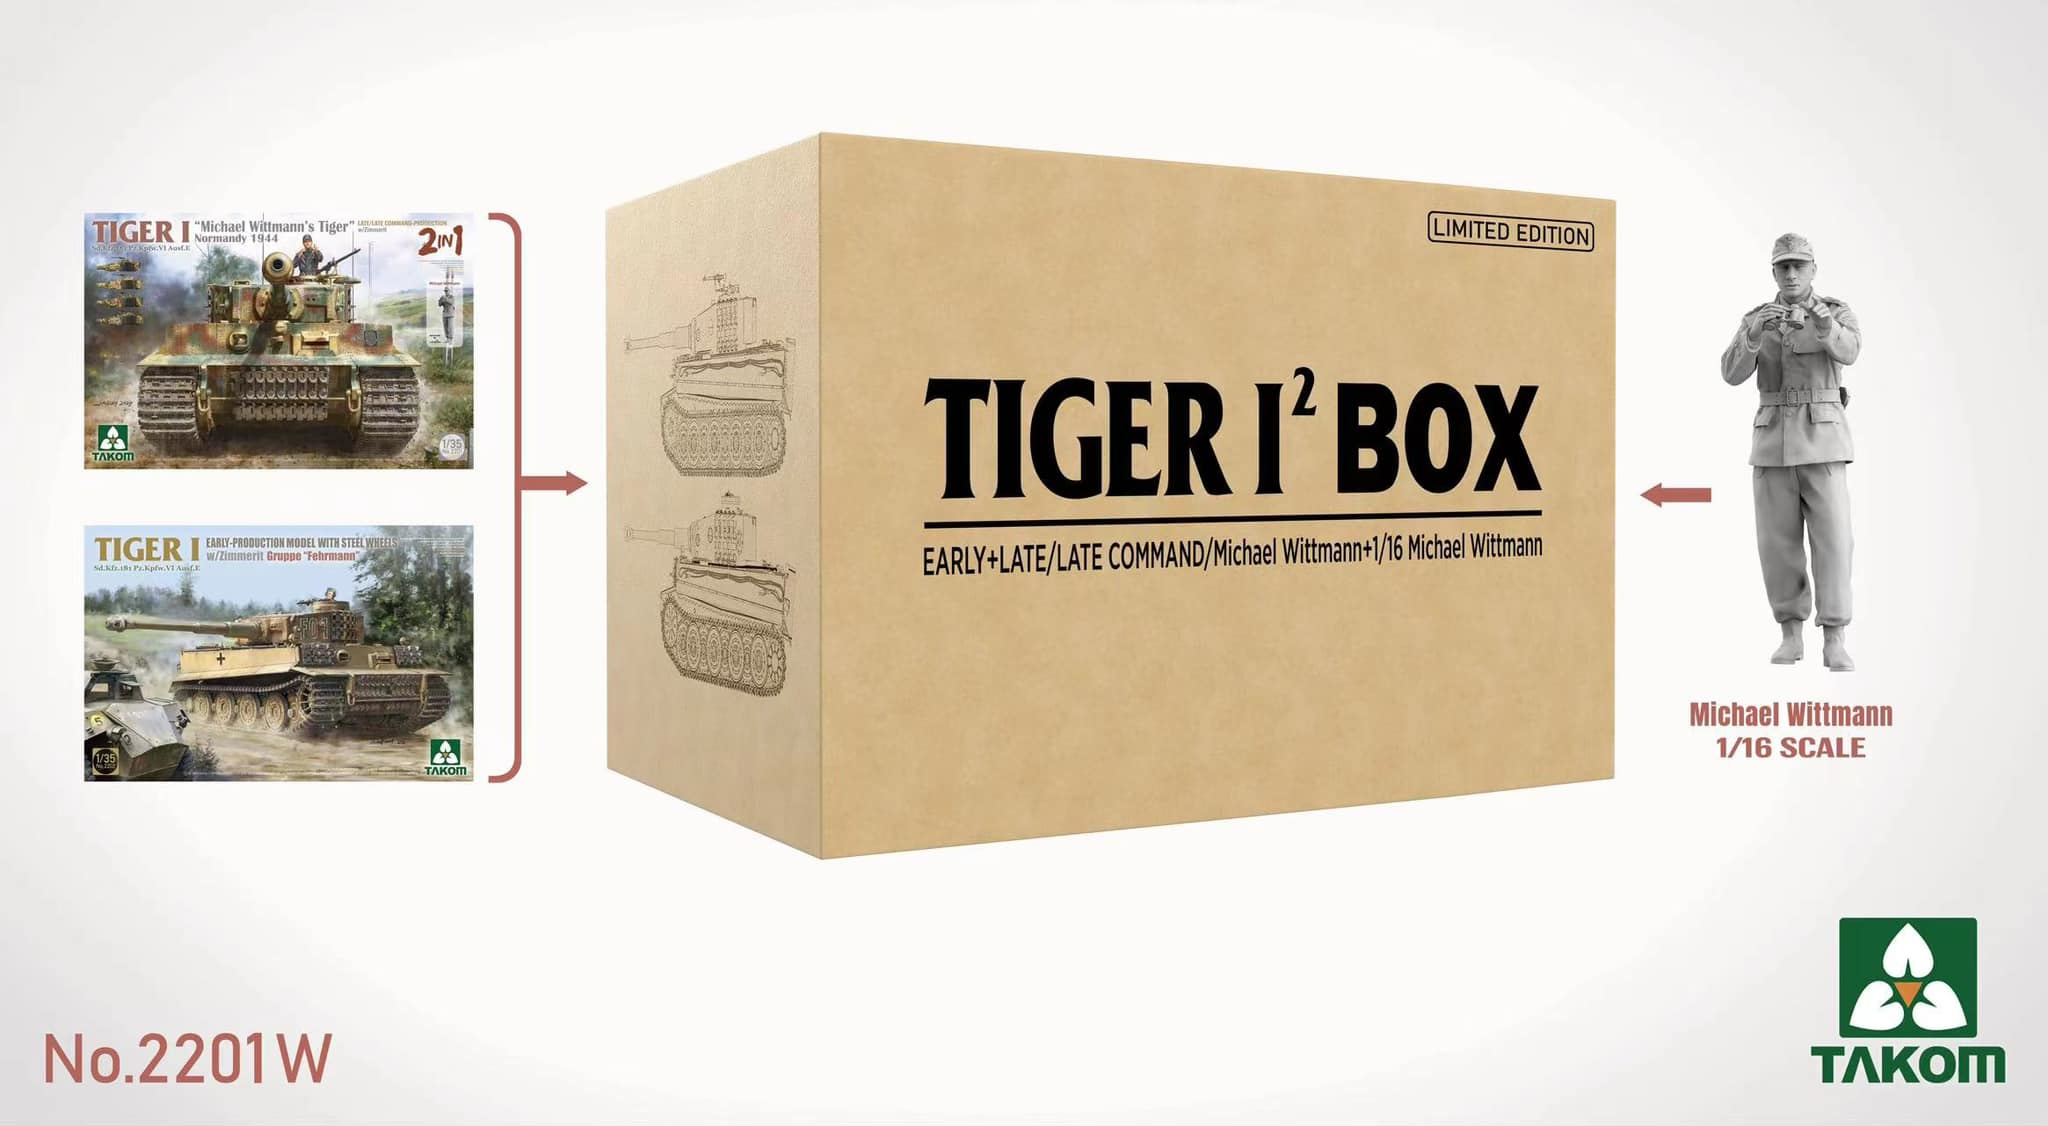 Tiger I Big Box² - 2 Kits + Michael Wittmann Figur in 1/16